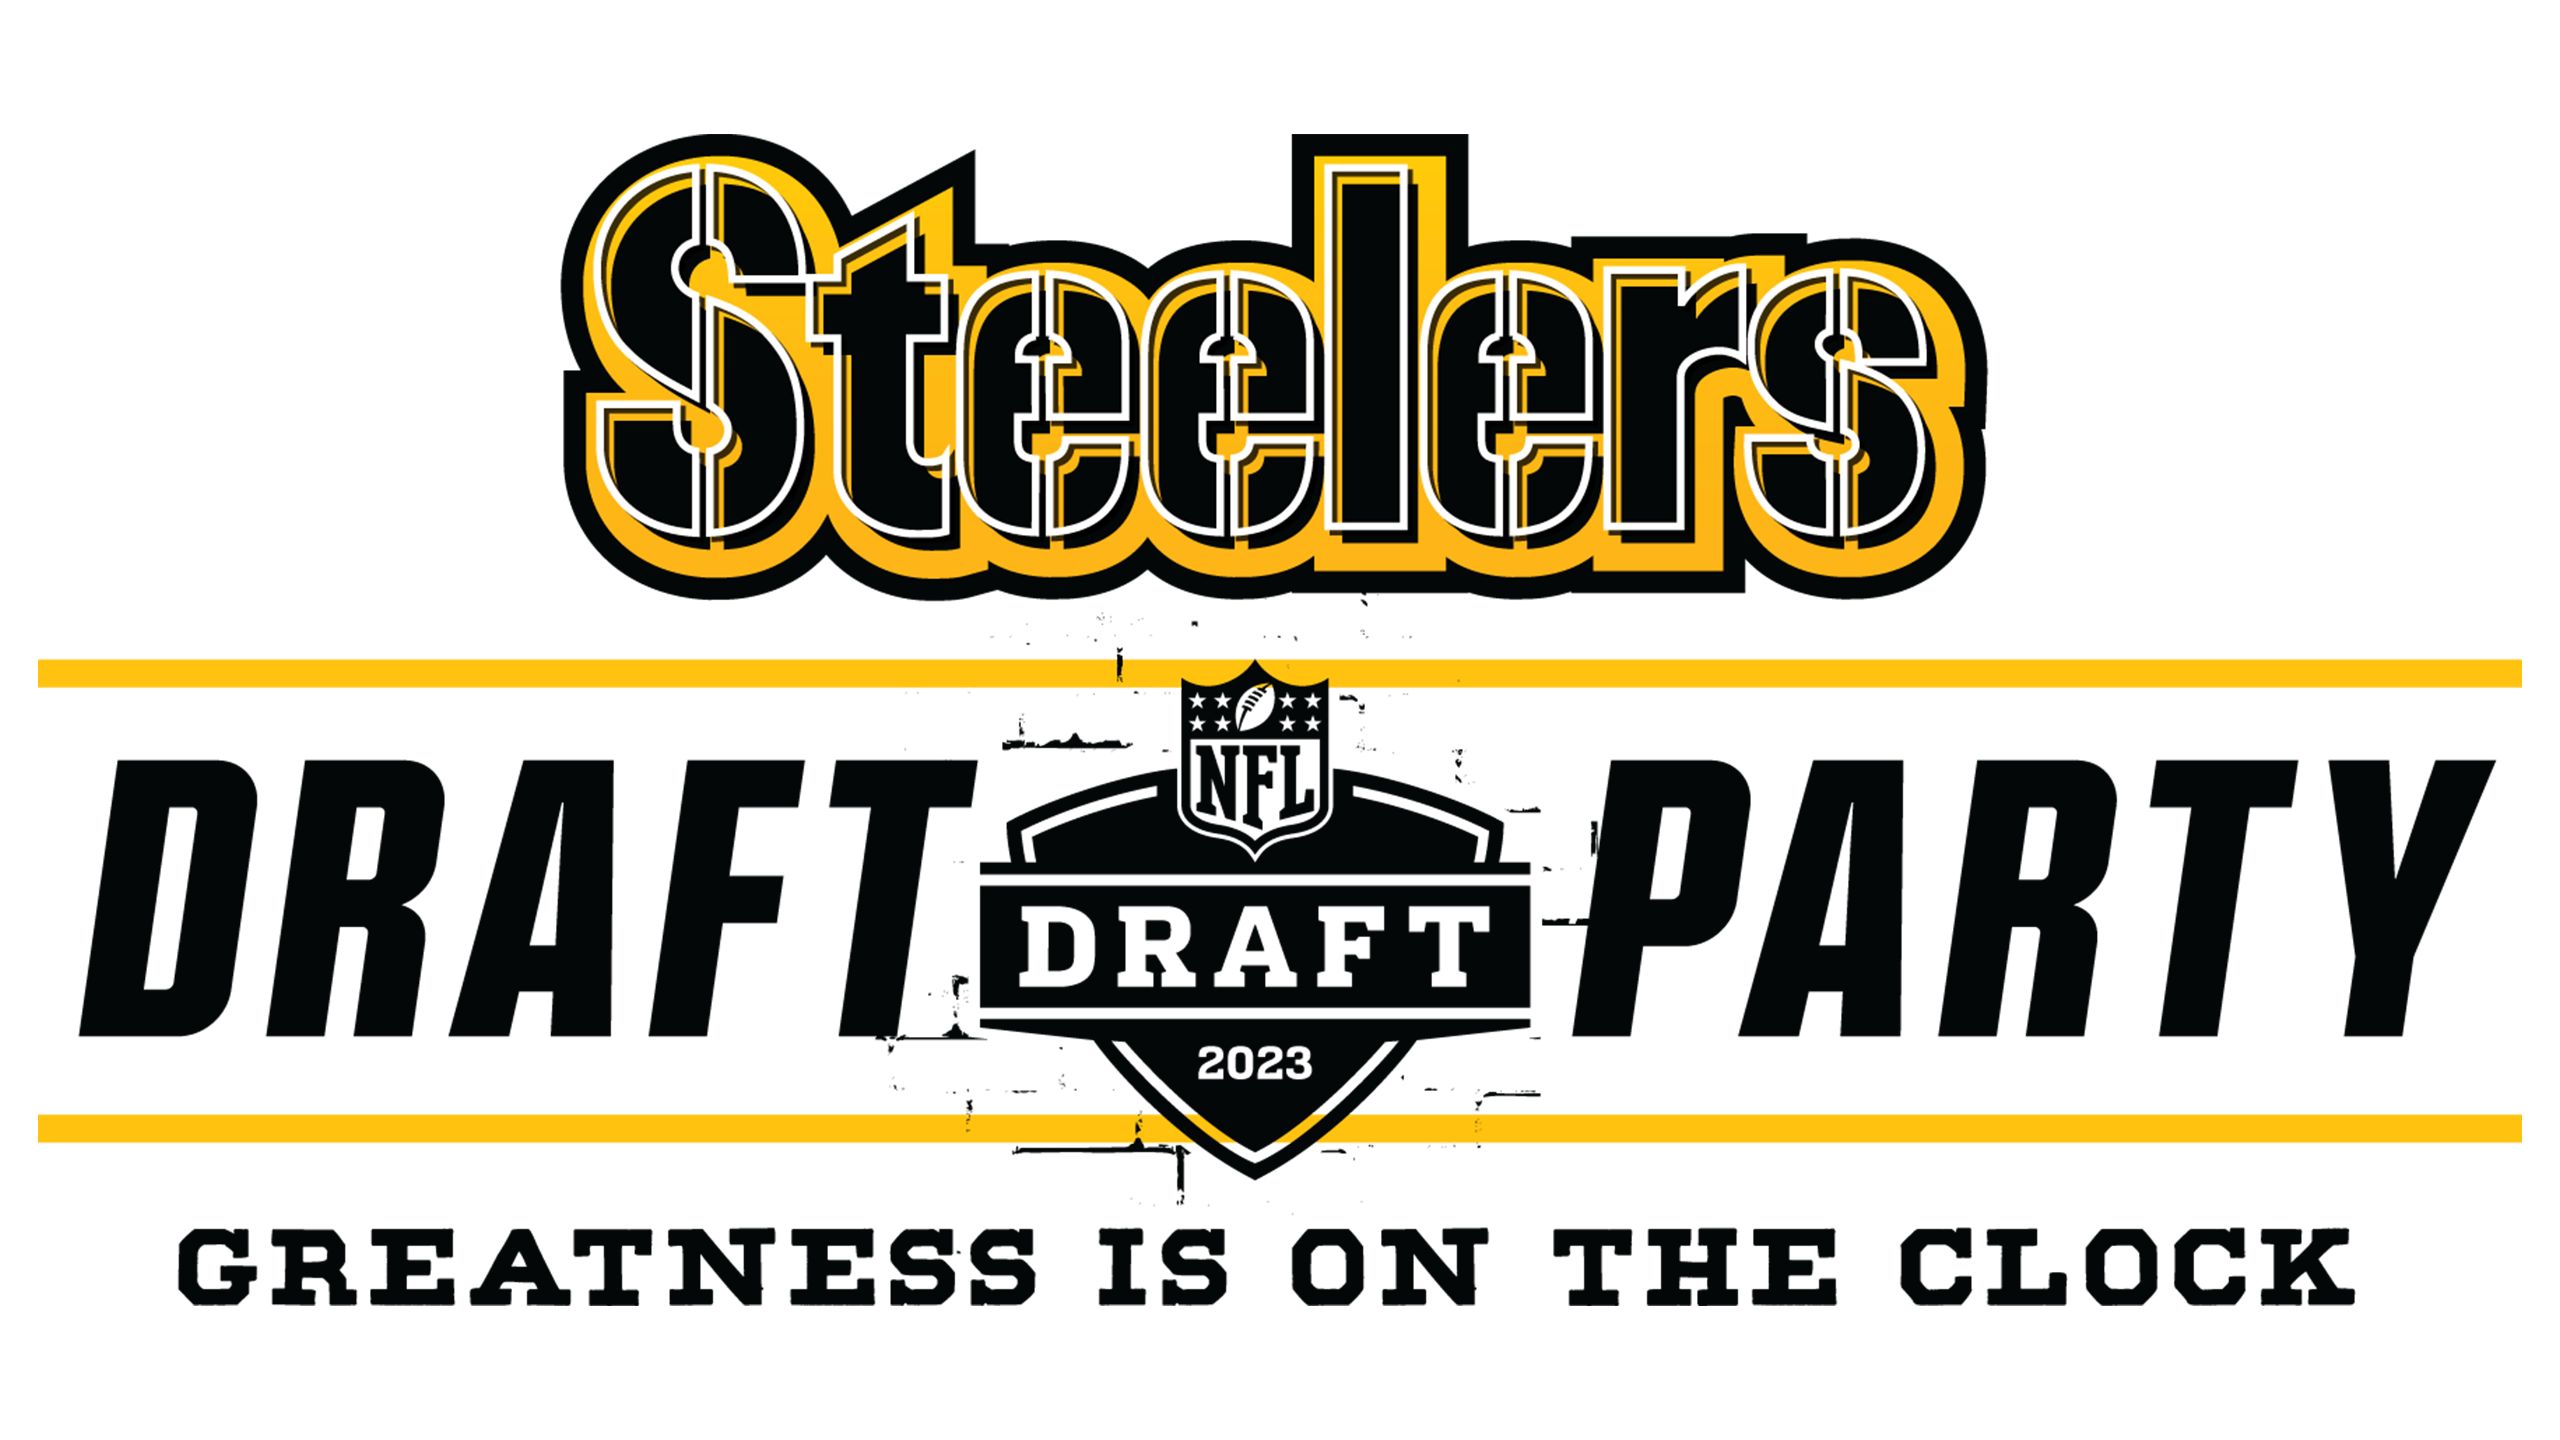 Steelers draft JaieSetuat